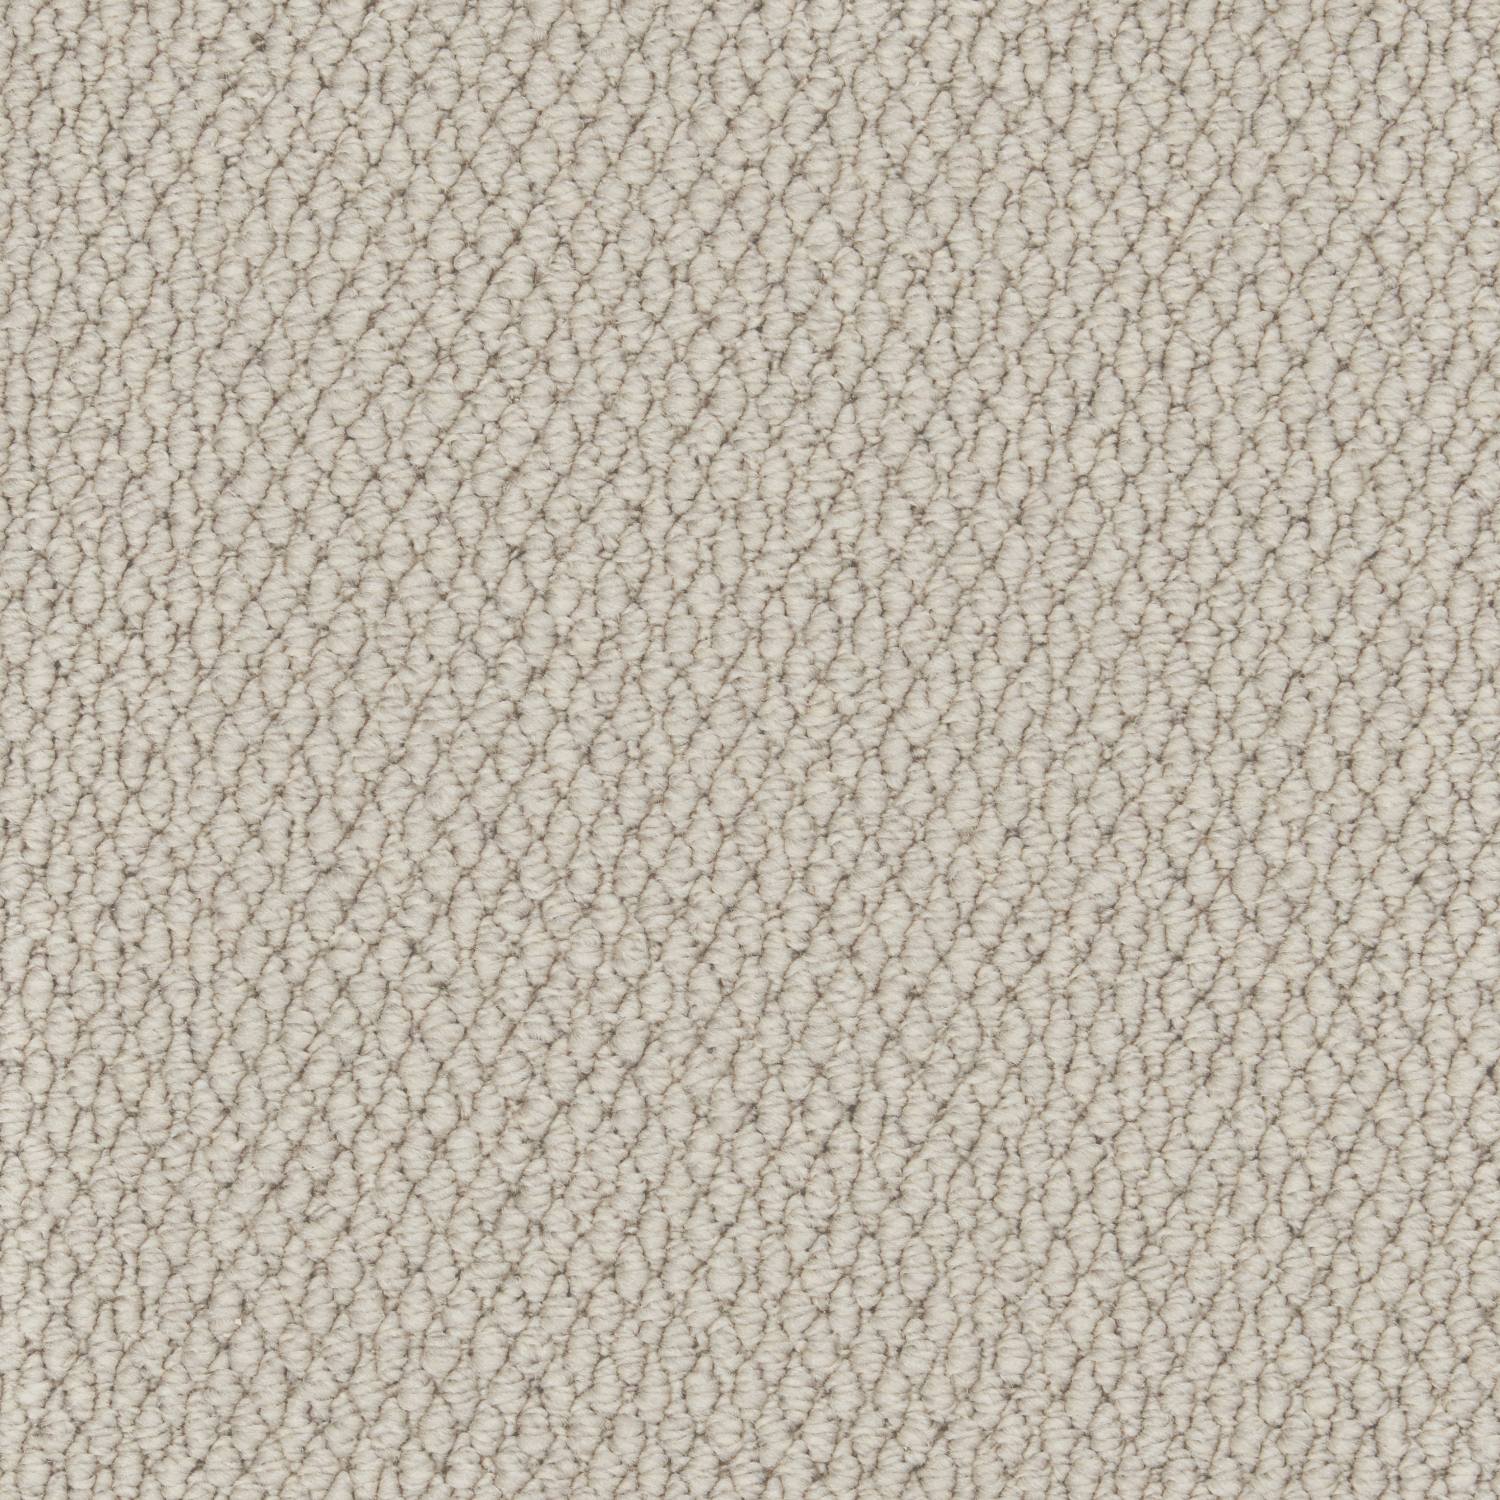 Rural Textures Loop Carpet - Smooth Slate Weave